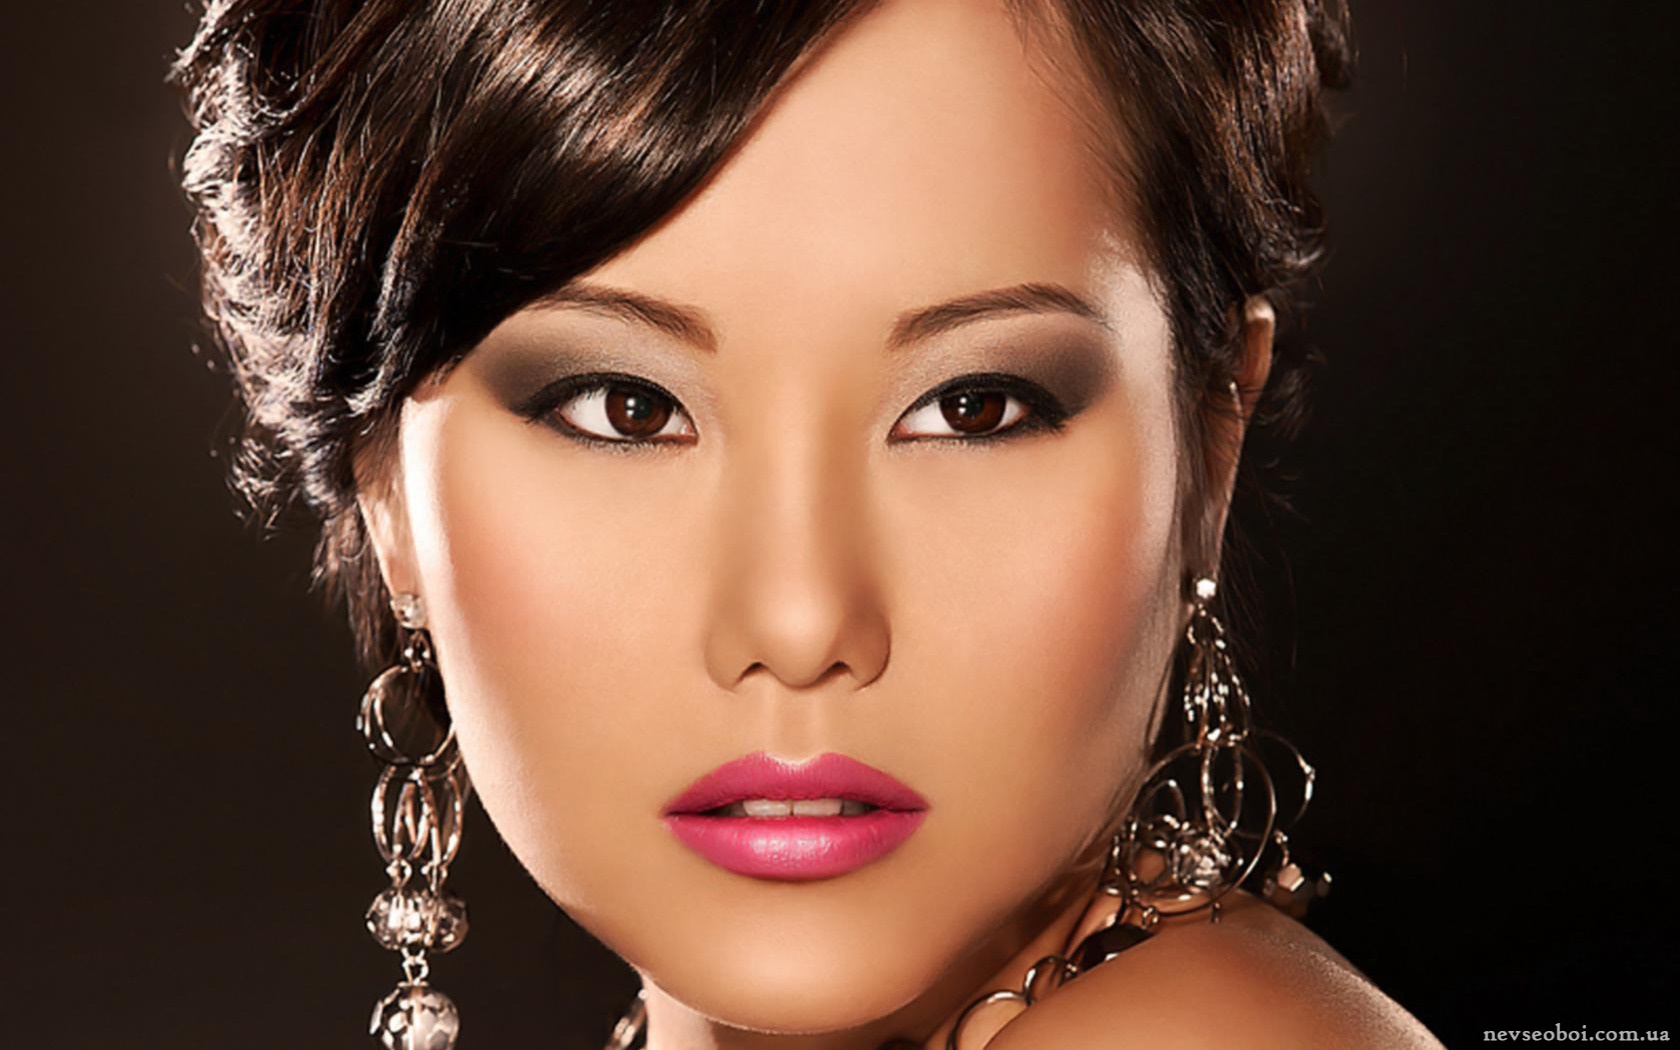 Лицо красивой азиатки. Раскосые азиатские глаза. Вечерний макияж для азиатских глаз. Красивый разрез глаз. Макияж азиатских девушек.